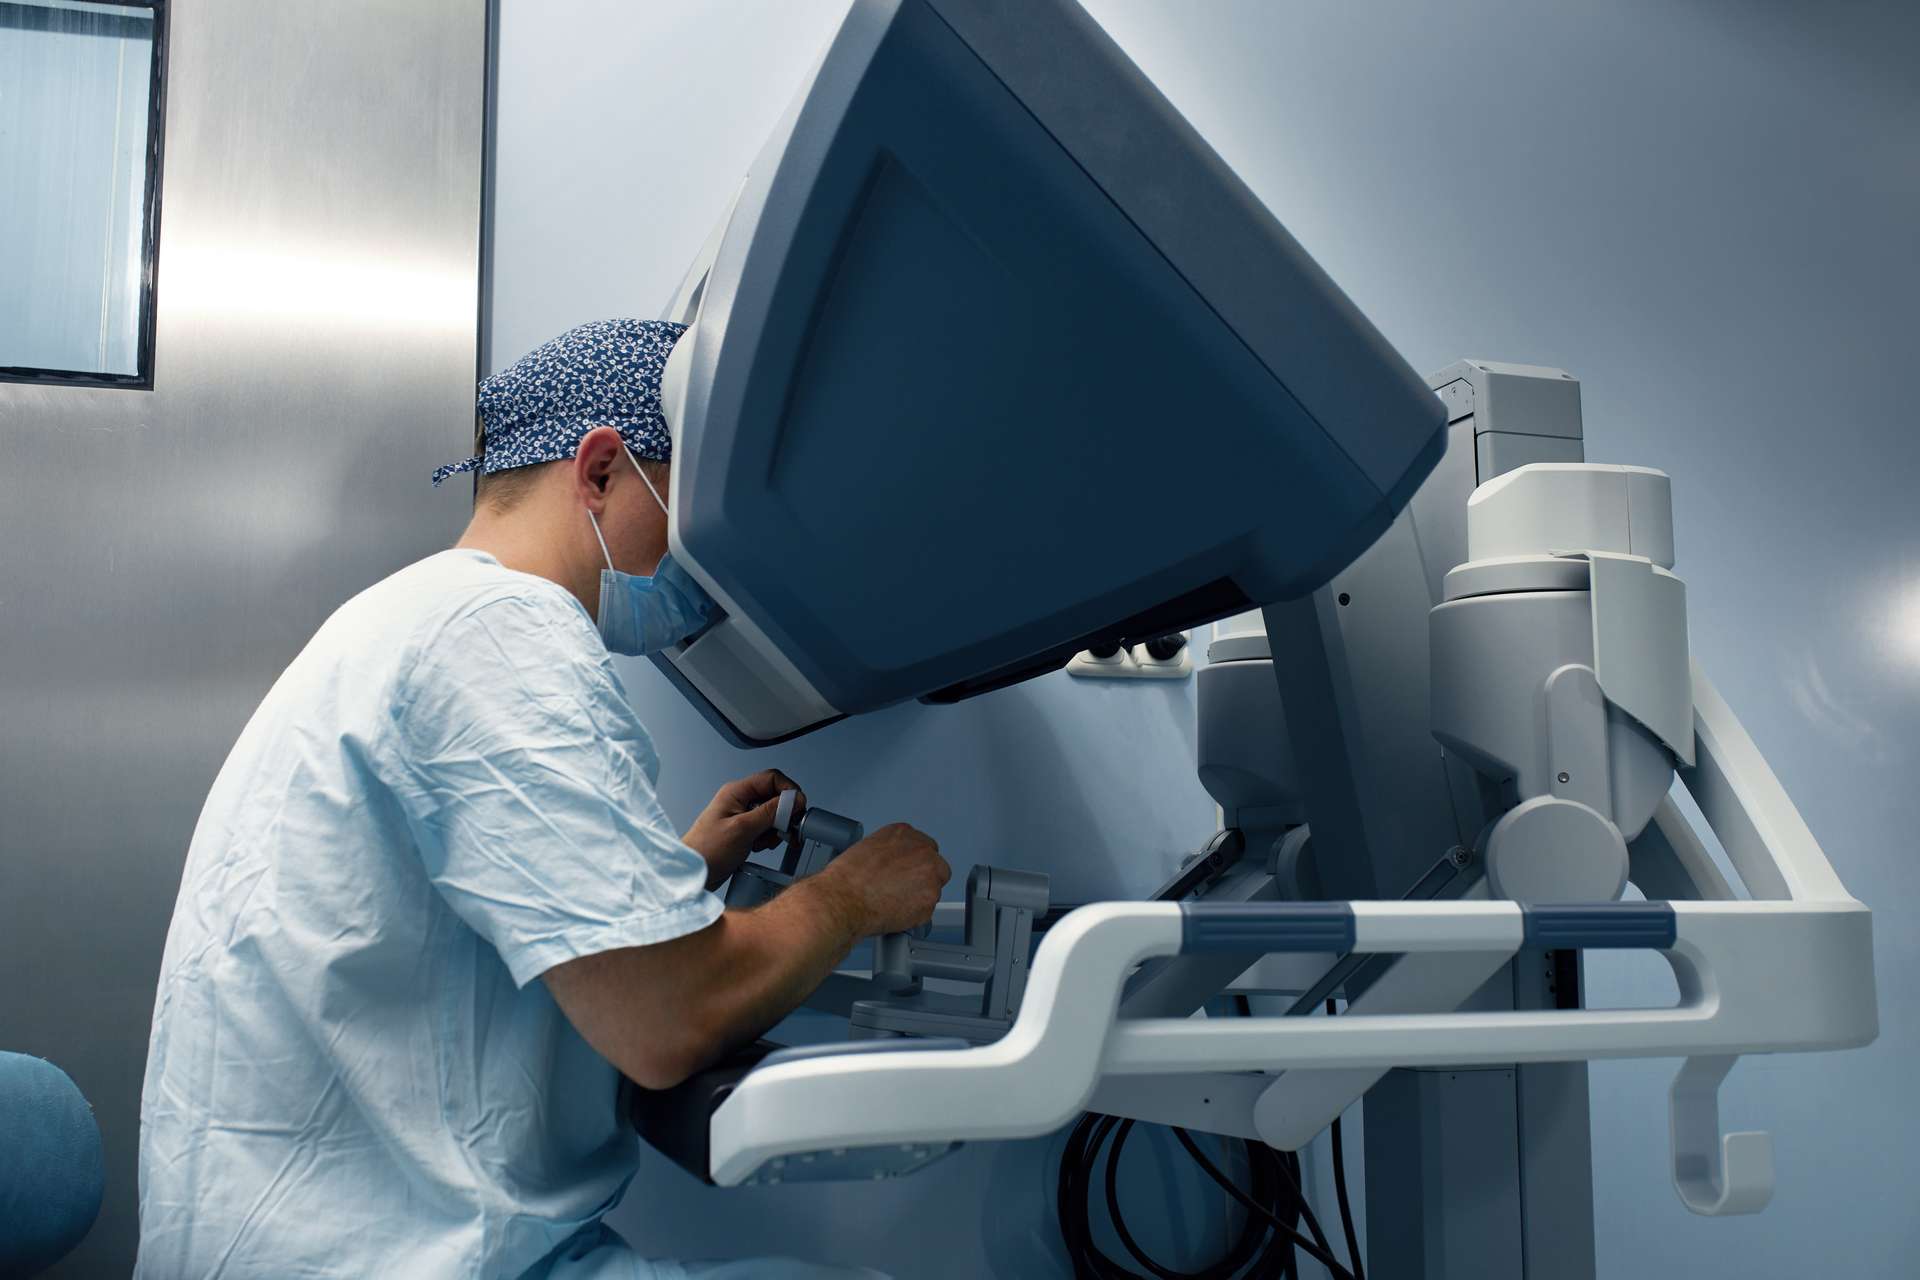 Un robot trapianta un intero fegato a un paziente per la prima volta negli Stati Uniti